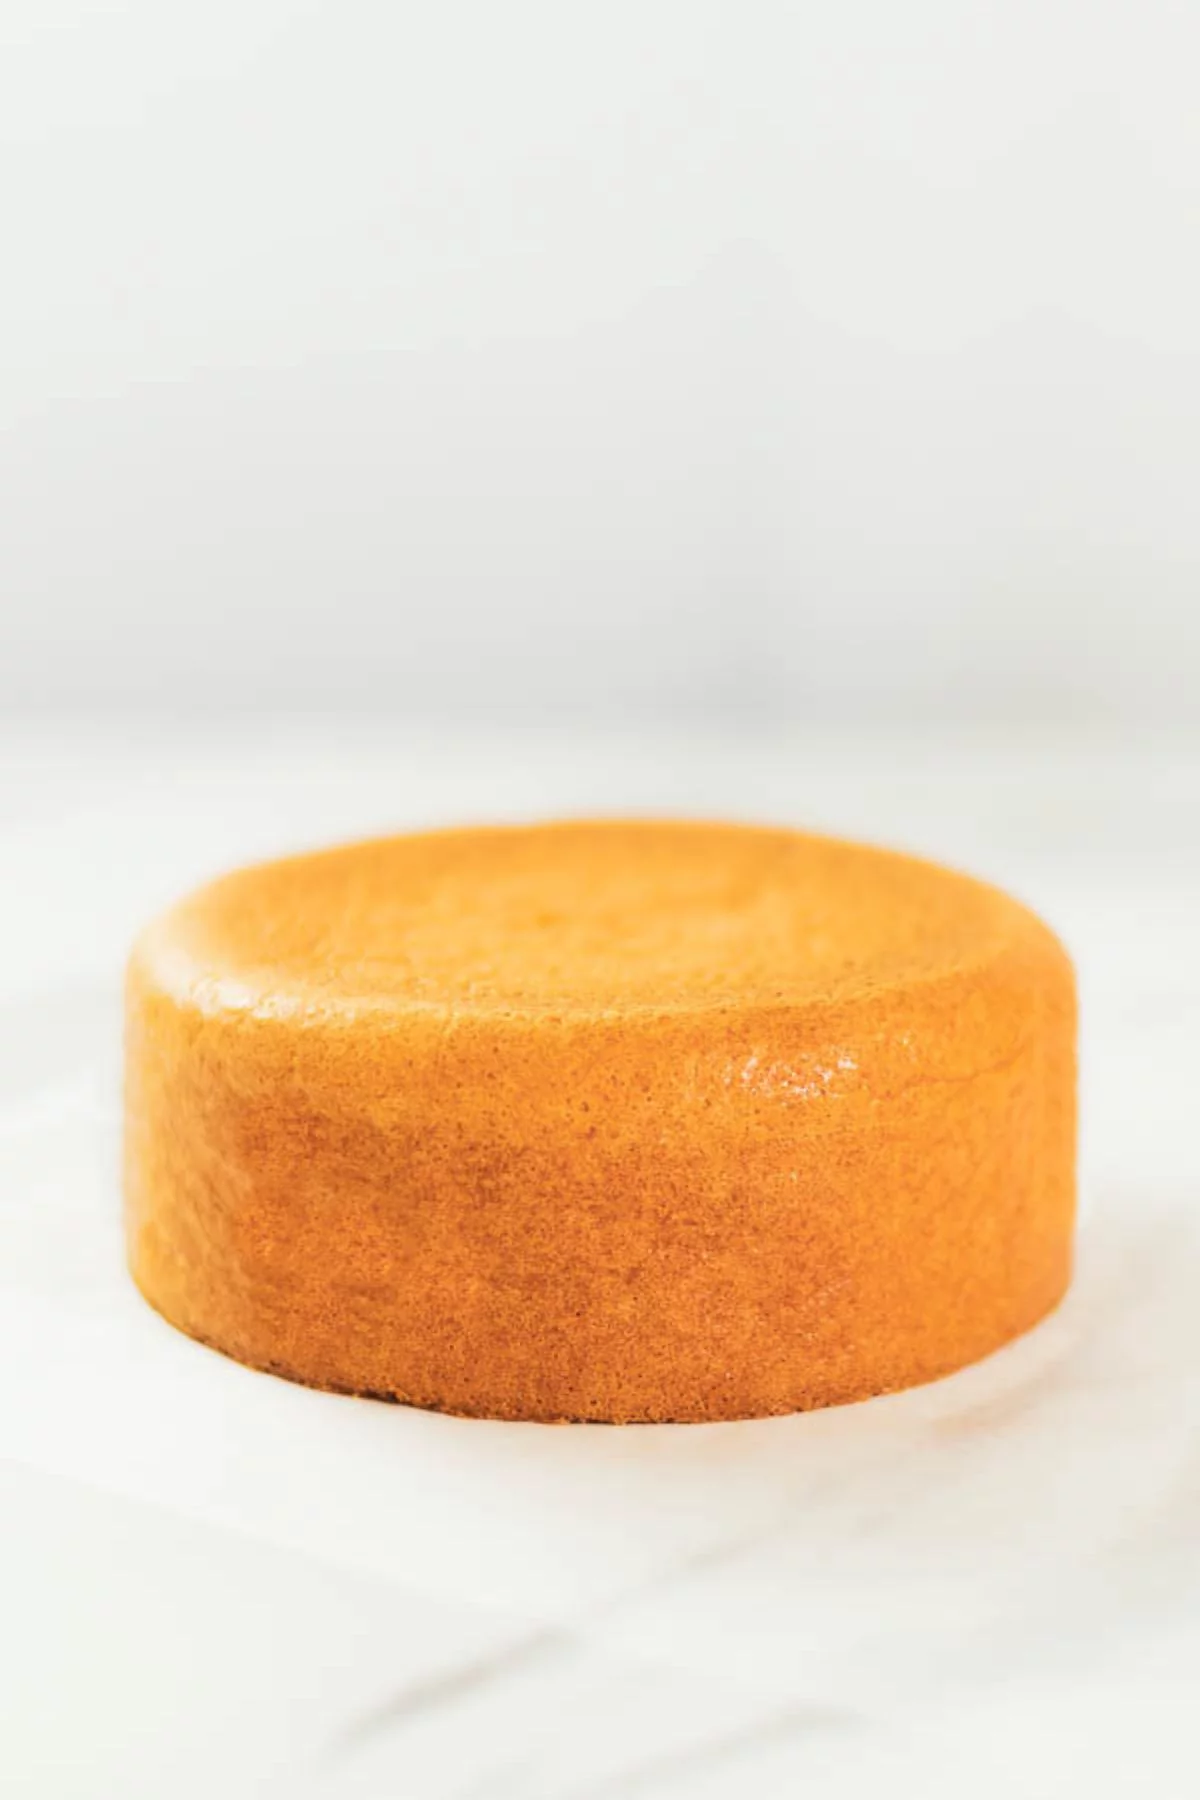 Fluffy and Moist! Never Fail Sponge Cake